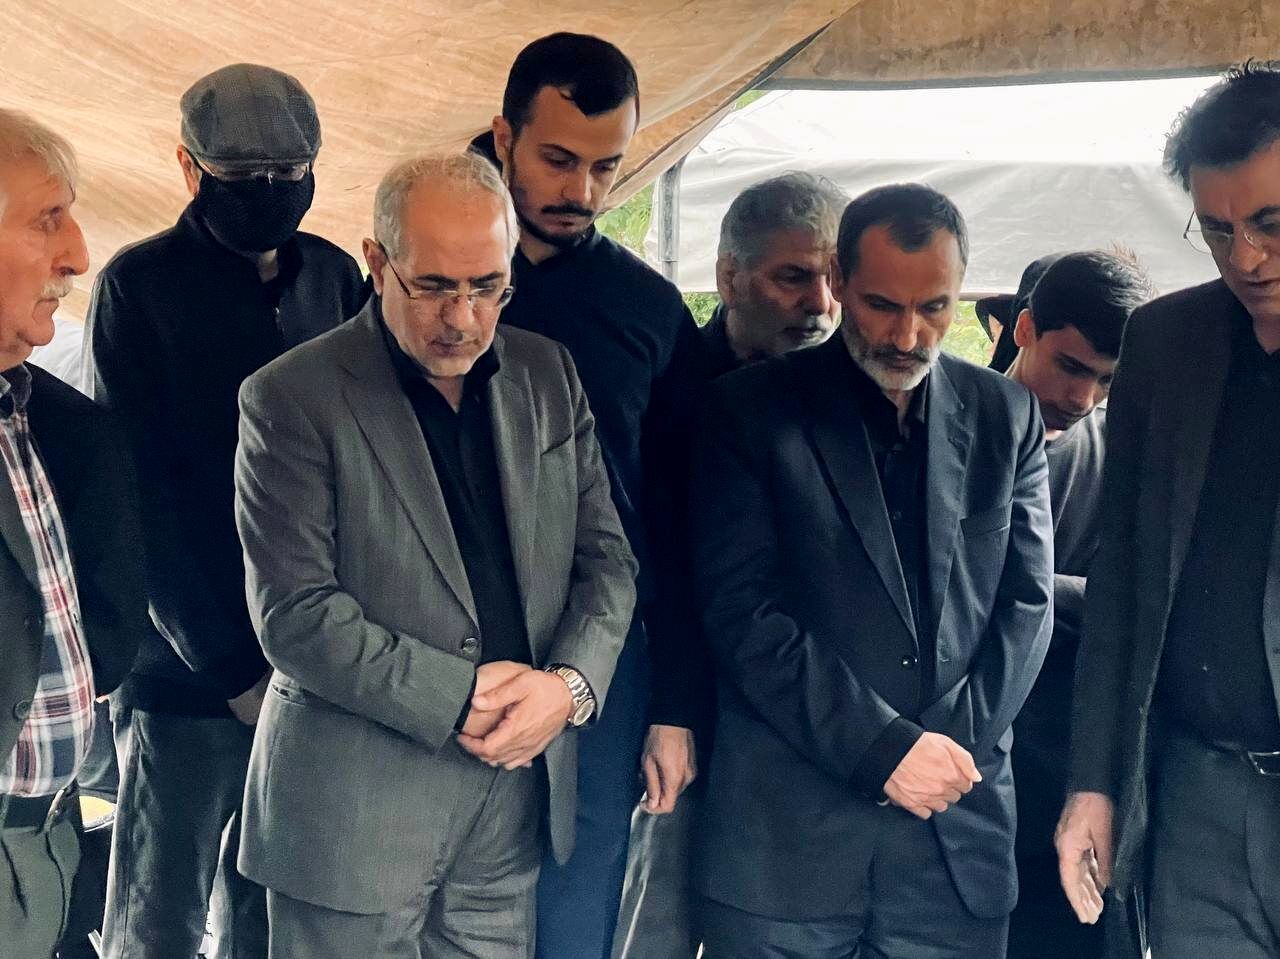 سکوت سنگین سه تفنگدار/ احمدی نژاد، مشایی و بقایی کجا هستند؟/ مدعیان عدالت طلبی مهر سکوت بر لب زدند!